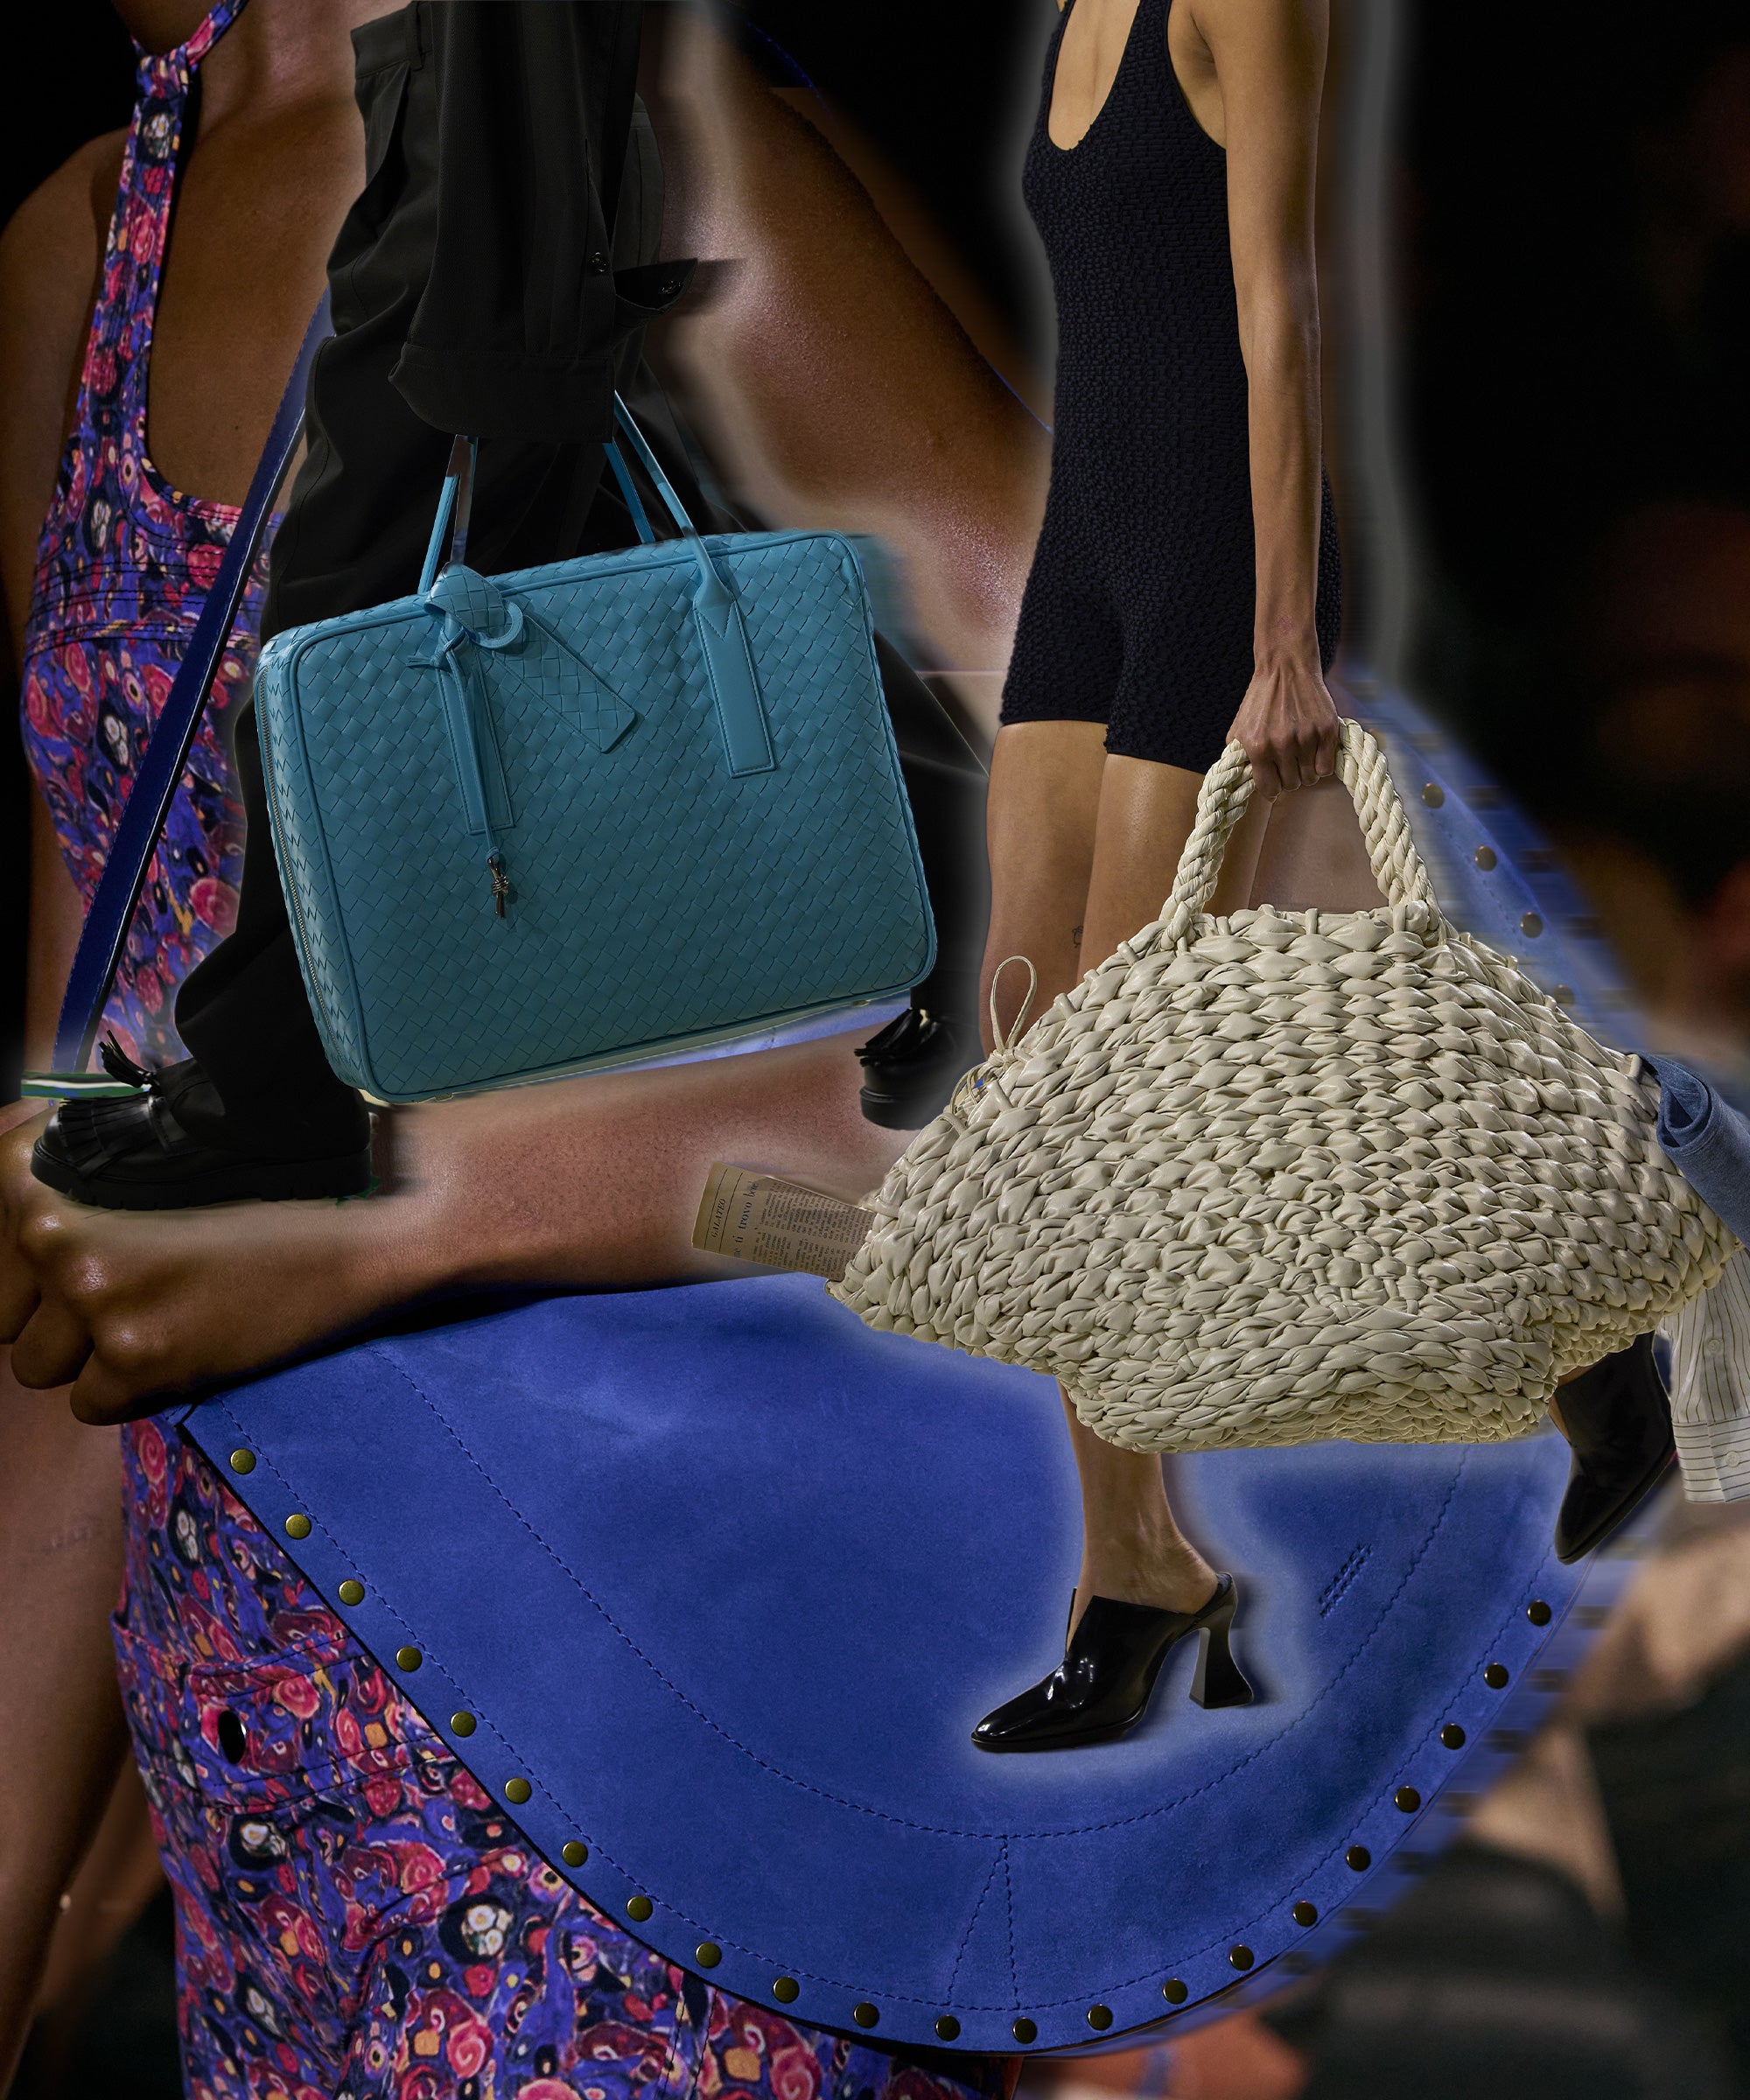 10 trendy purses for winter: Reco, Rebecca Minkoff, Aldo and more